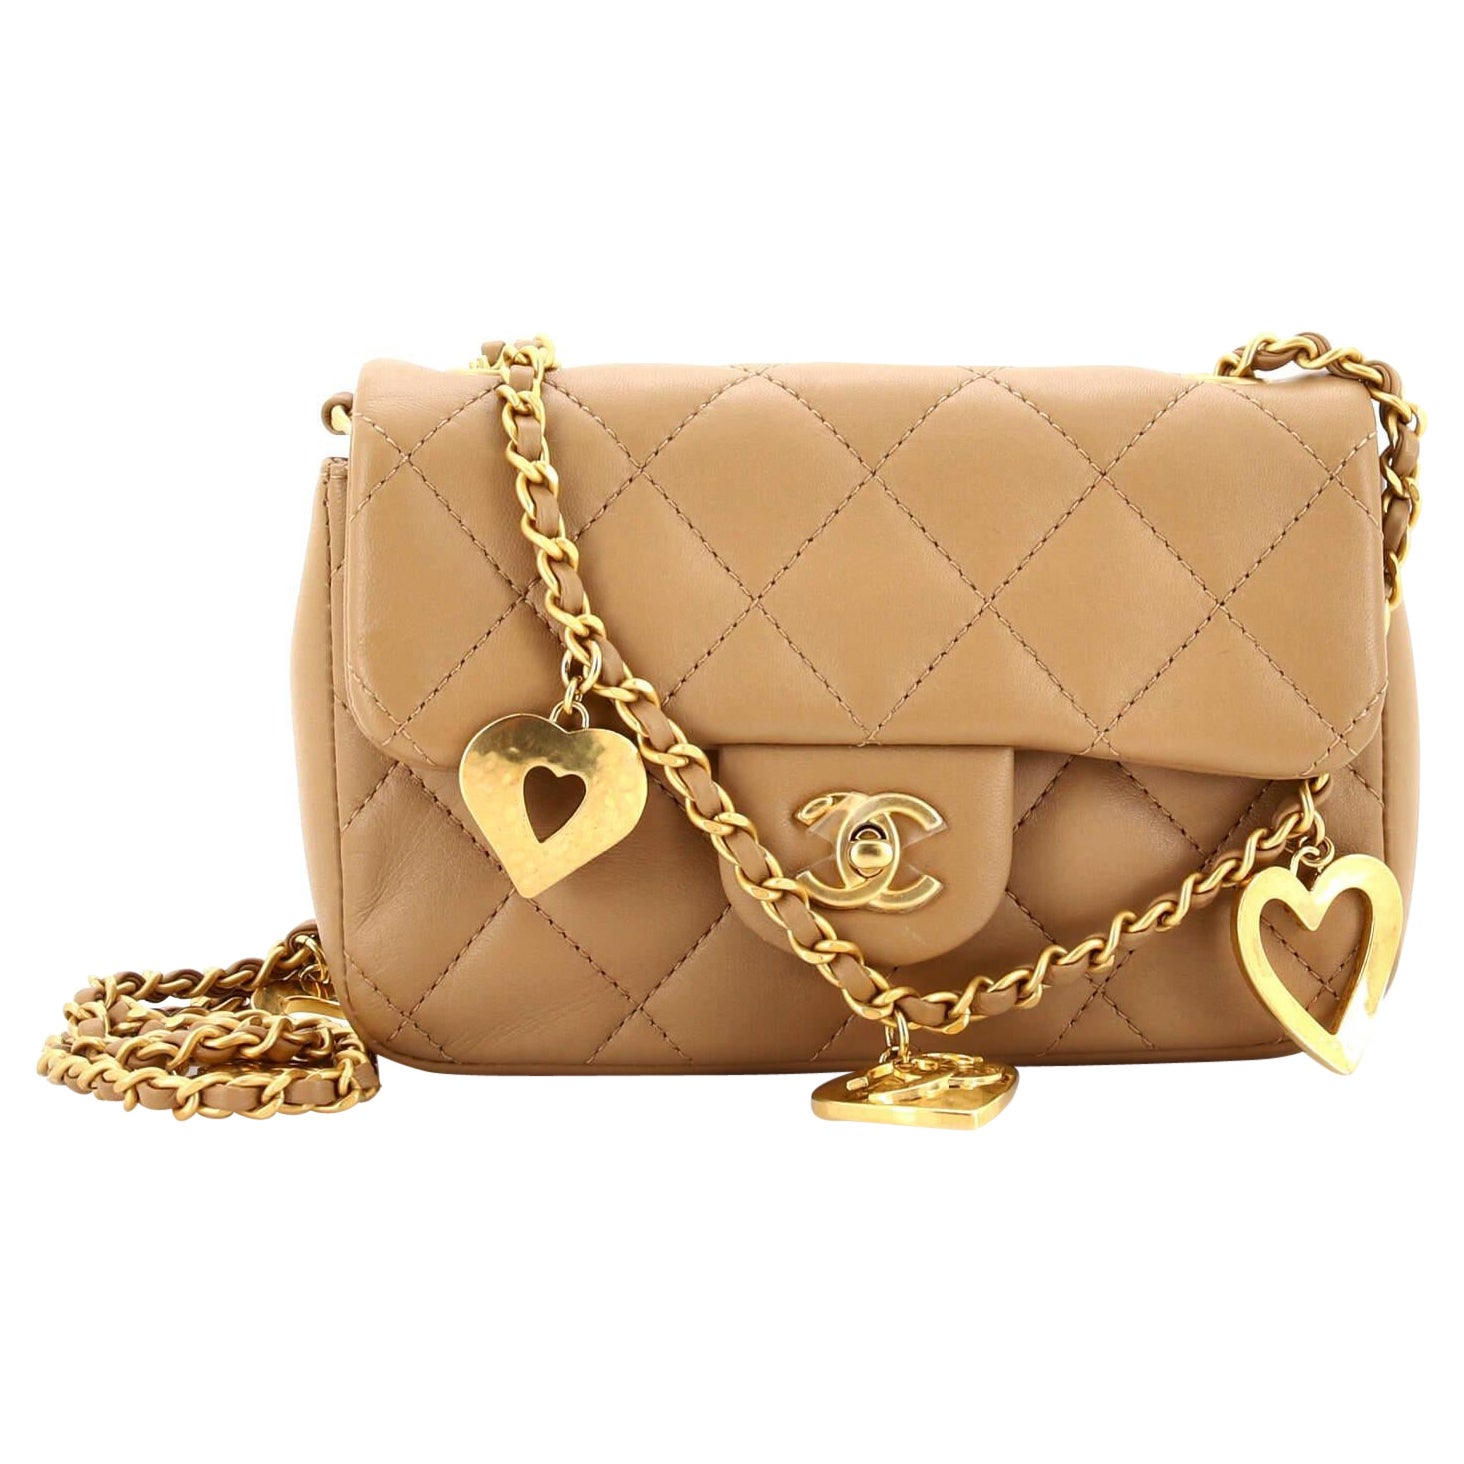 Chanel Mini Bag Charms - 27 For Sale on 1stDibs